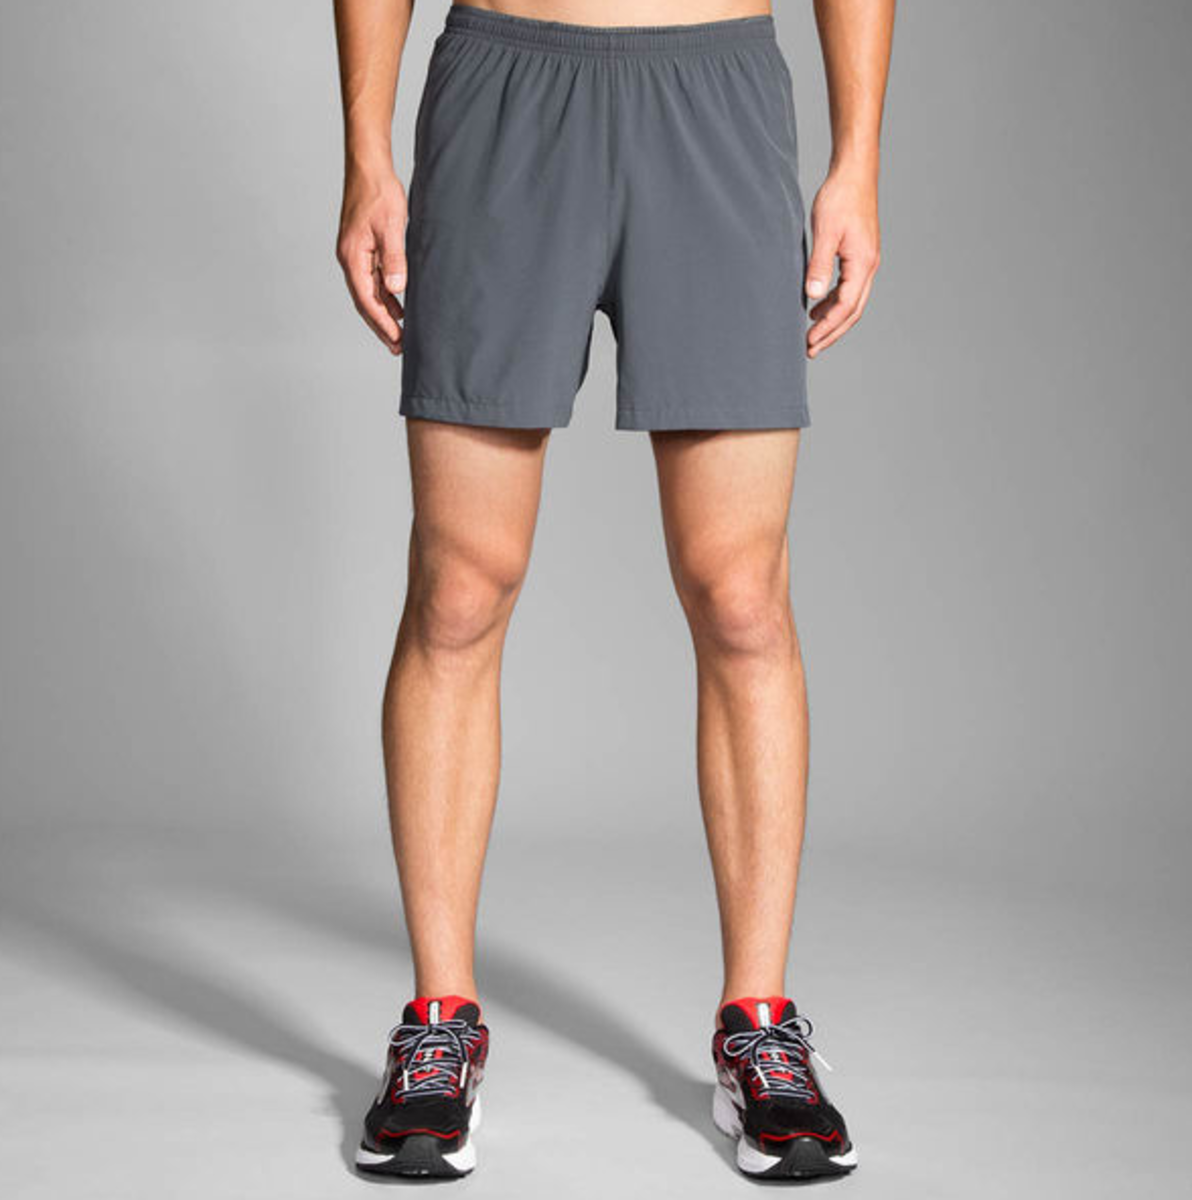 13 Best Summer Gym Shorts for Men - Men's Journal